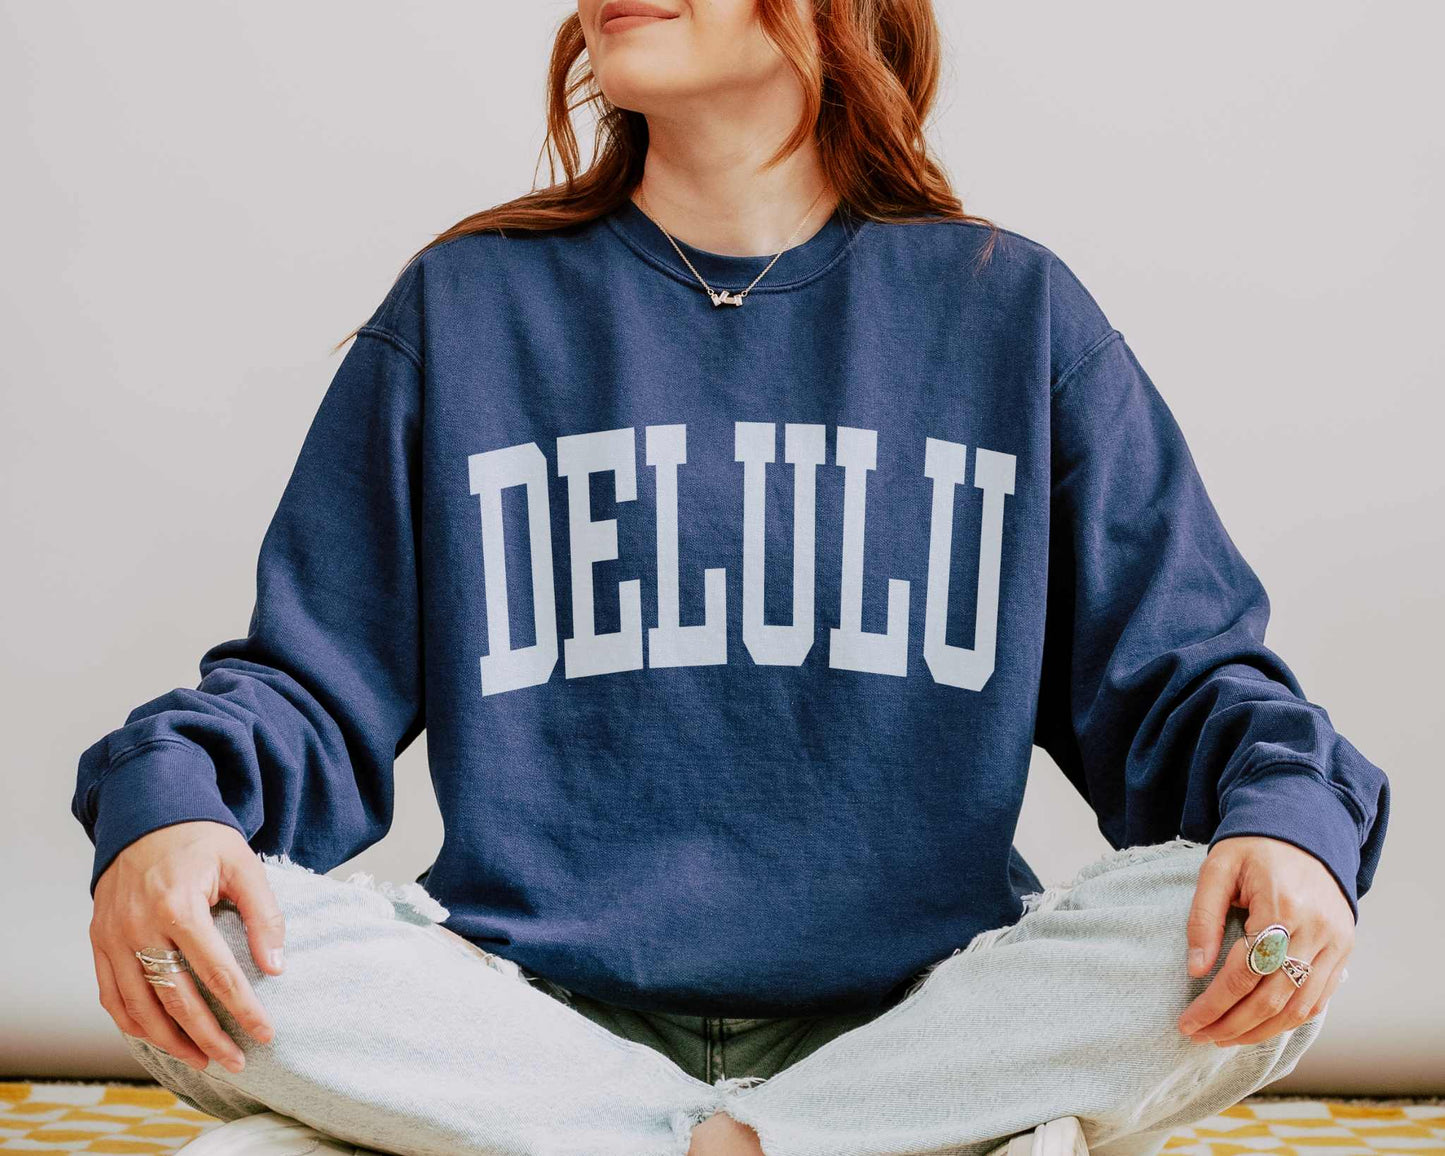 Delulu Delusional Preppy Comfort Colors Sweatshirt in True Navy.